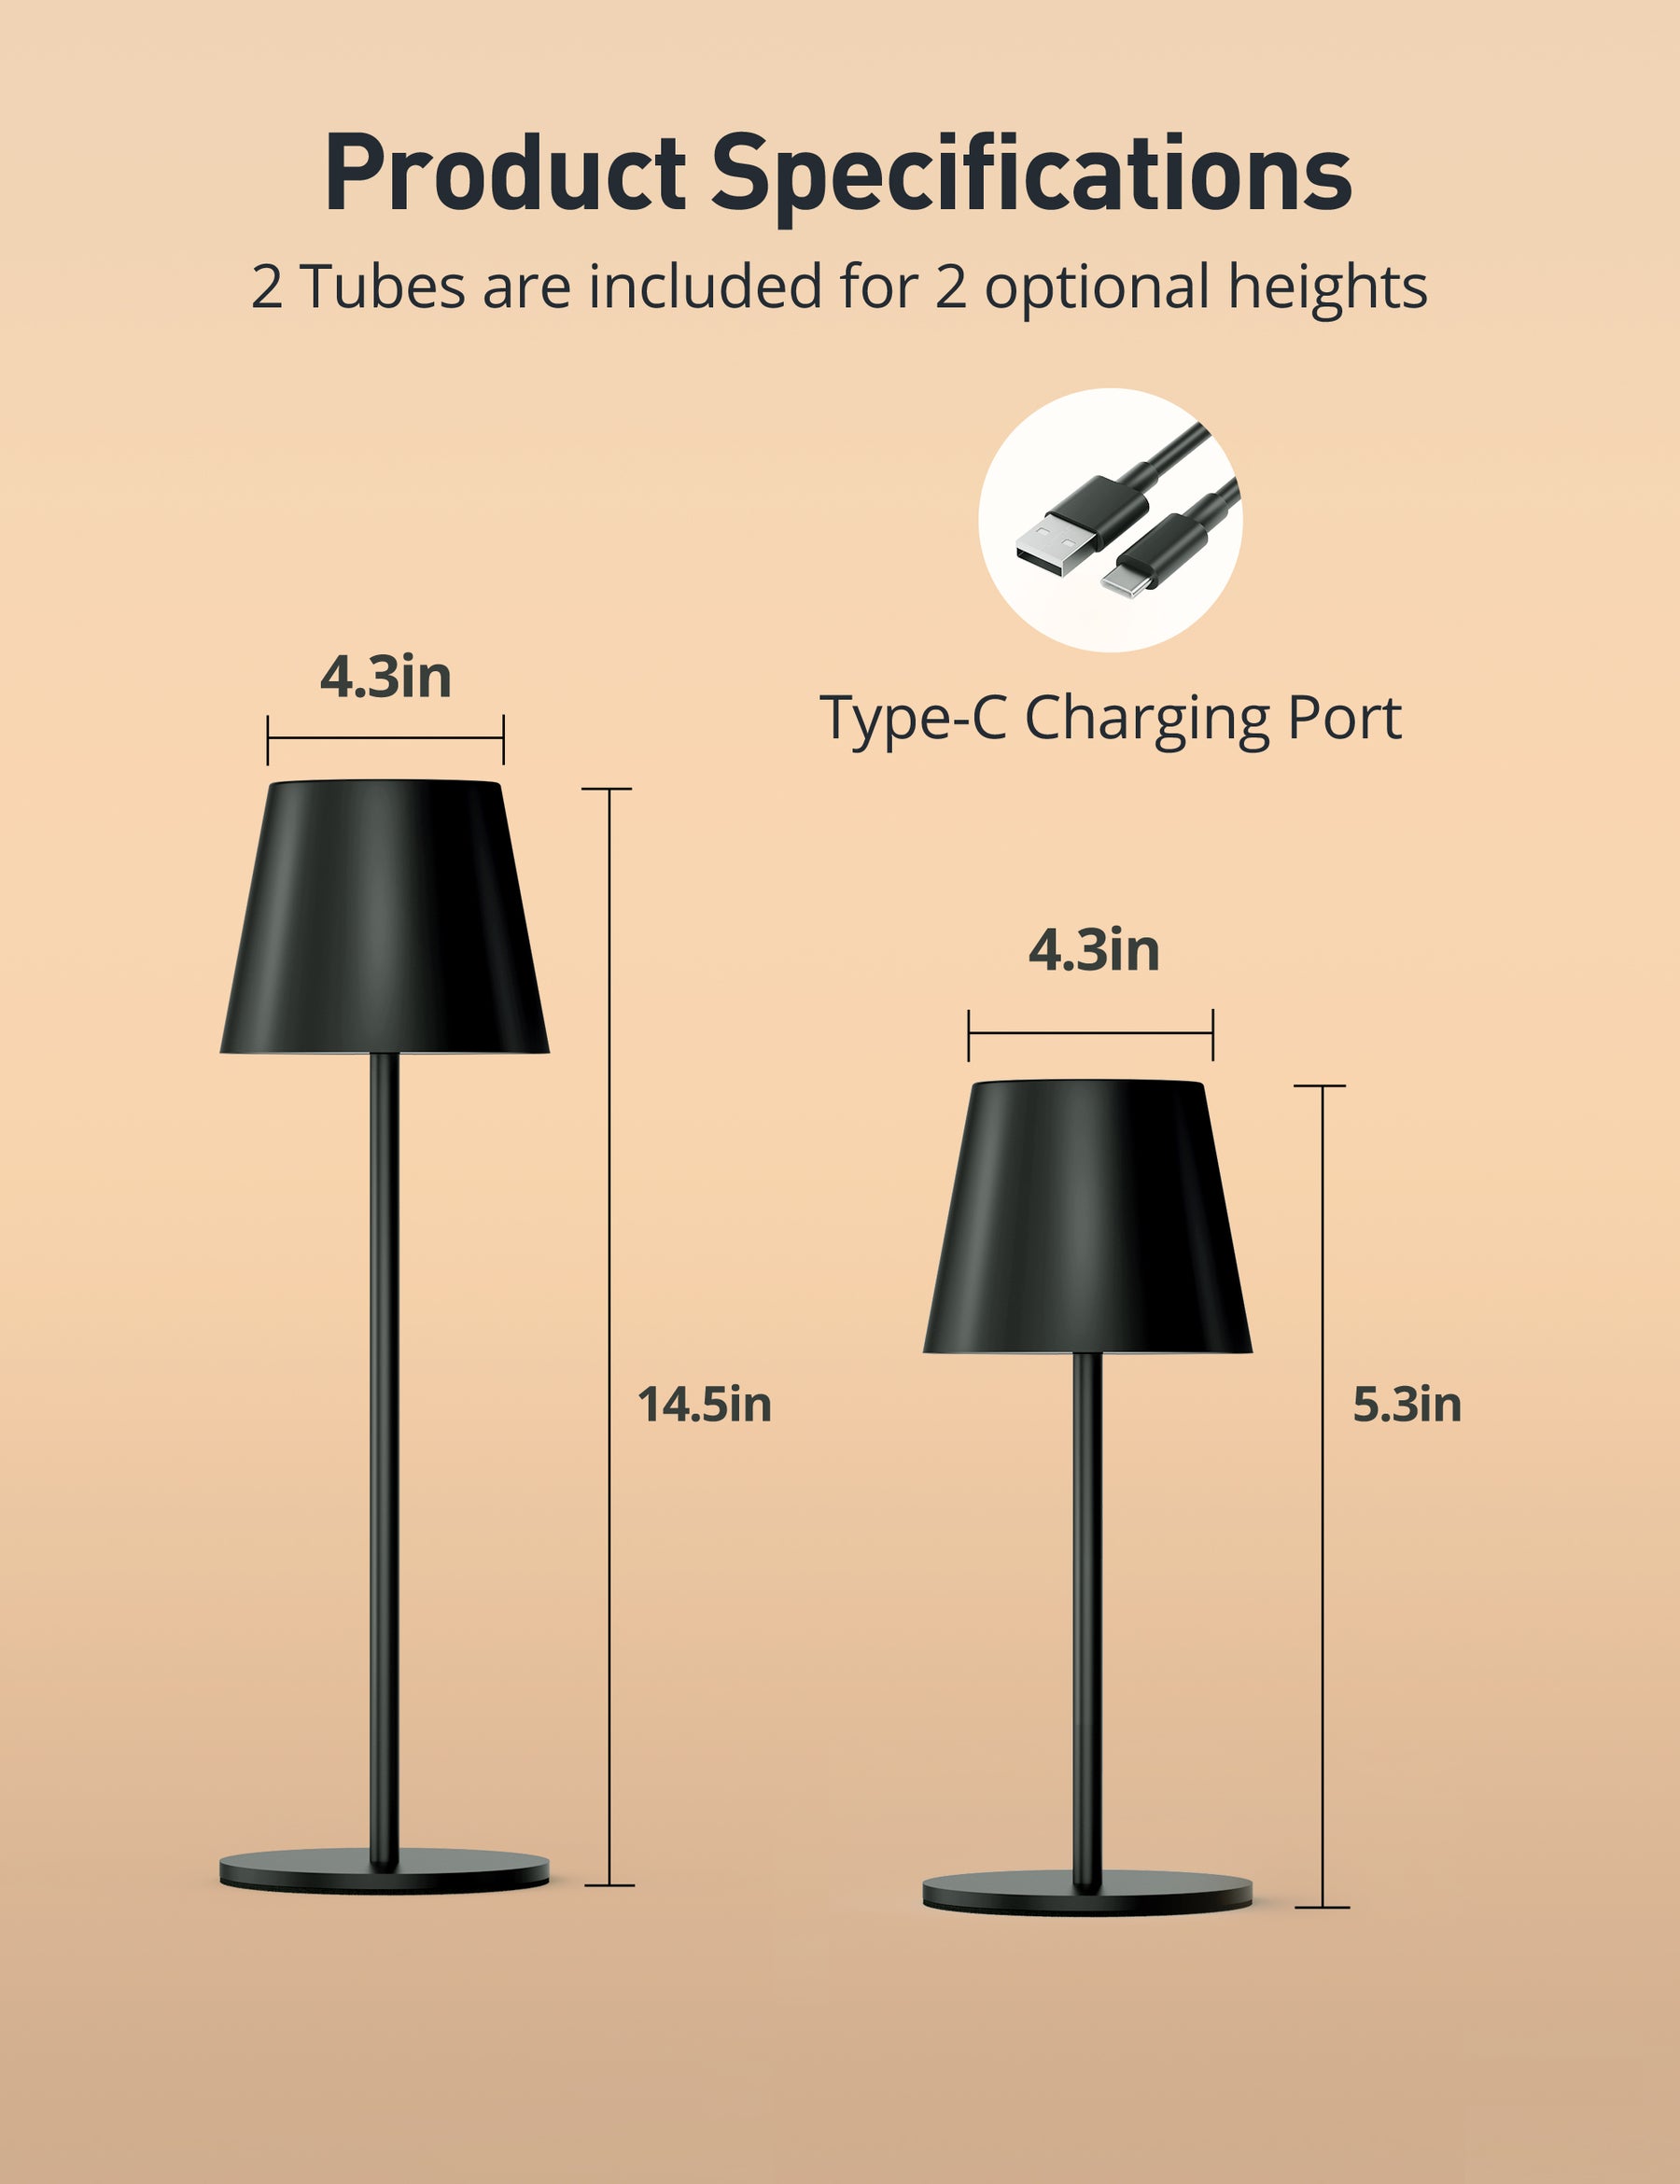 Lampe de Table Rechargeable LED avec port USB - 3000K - 2W - IP44